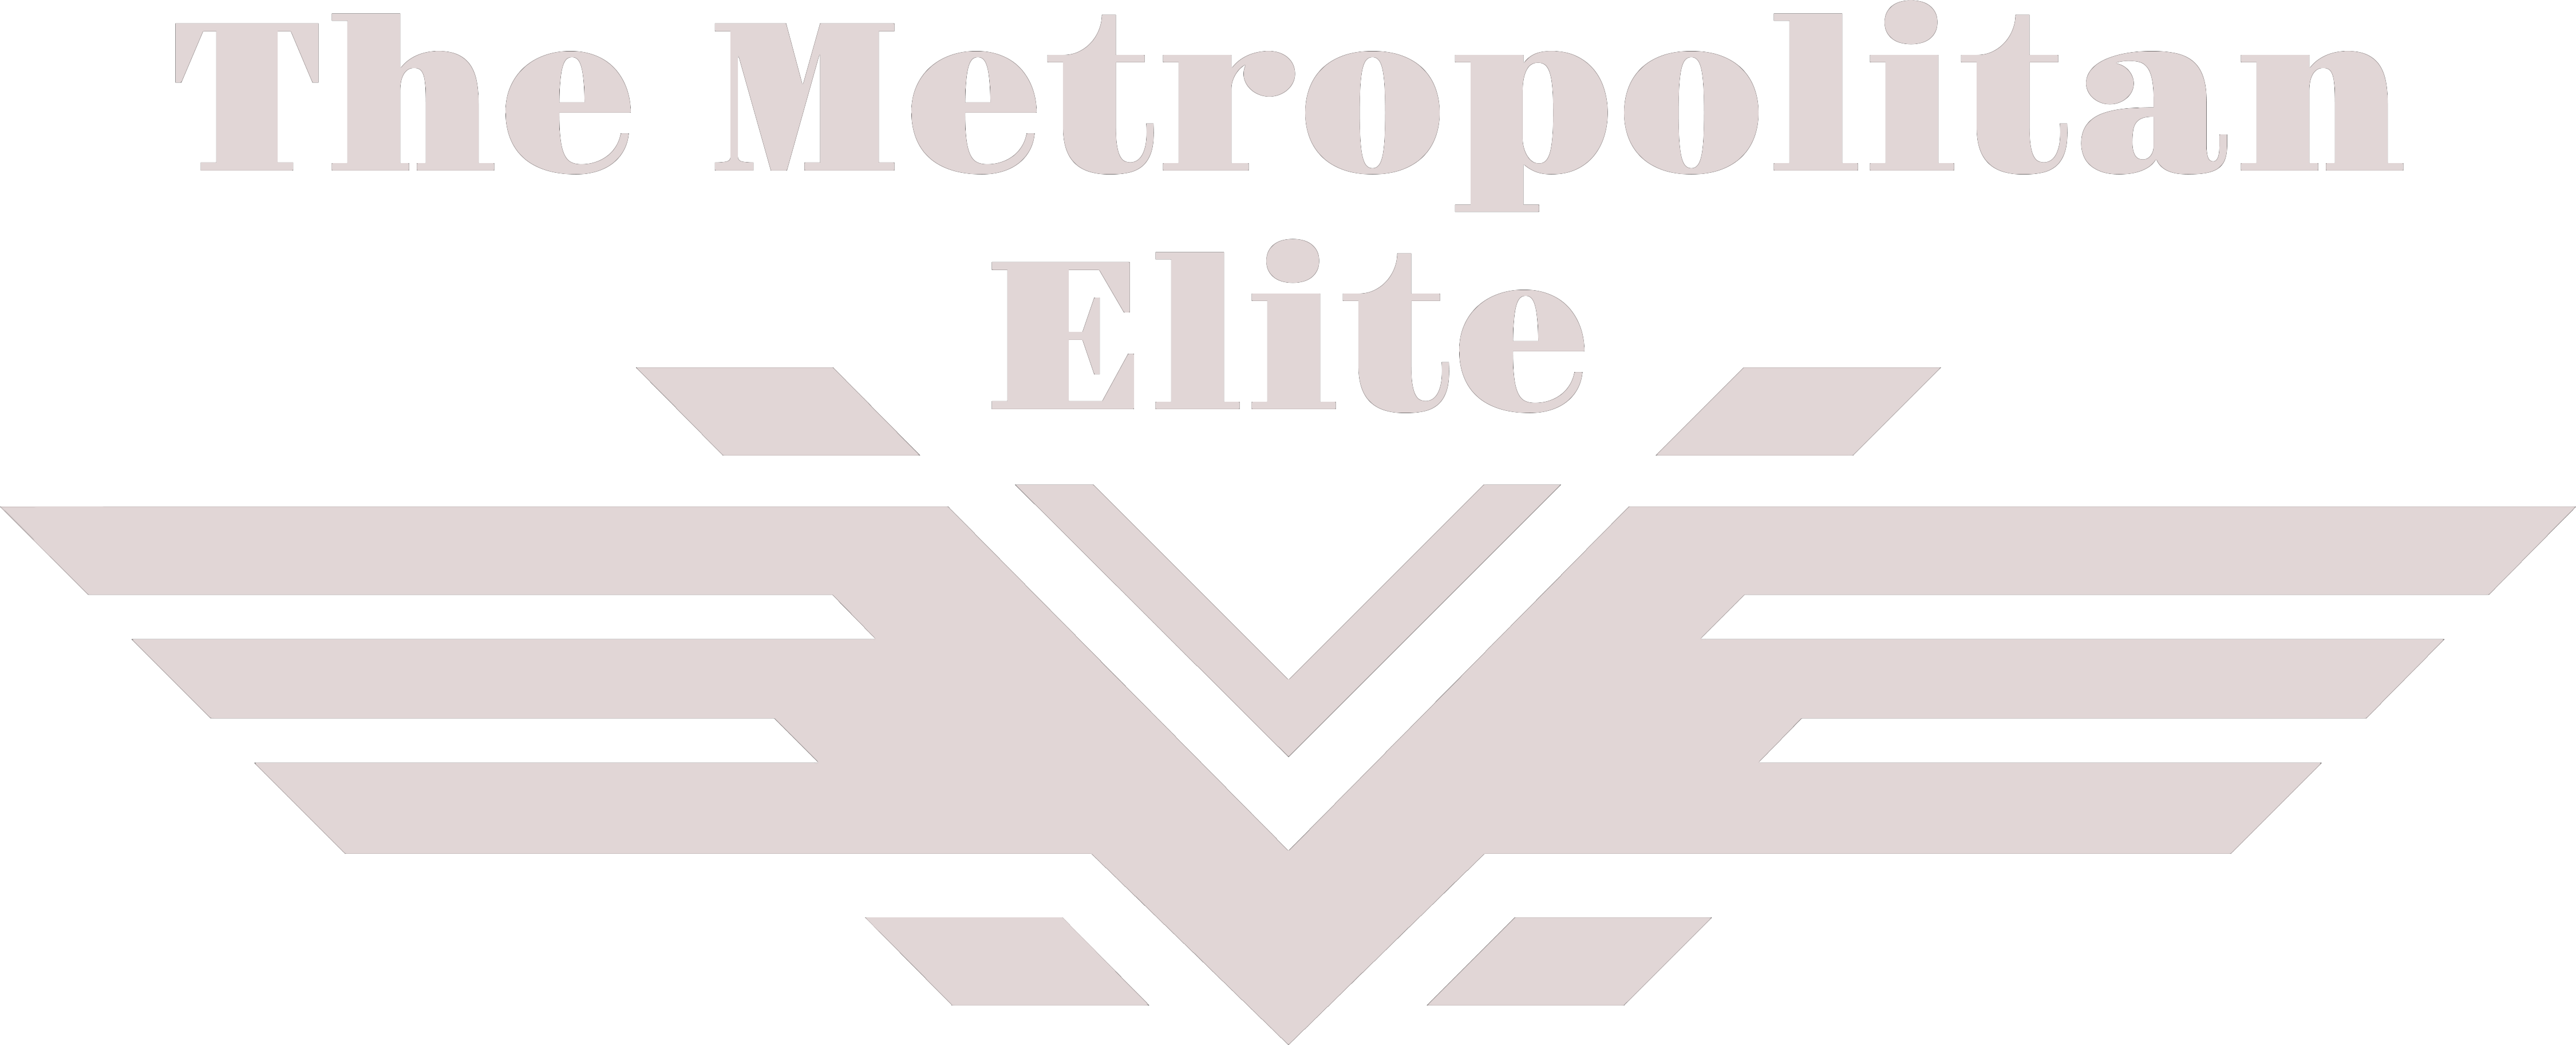 The Metropolitan Elite